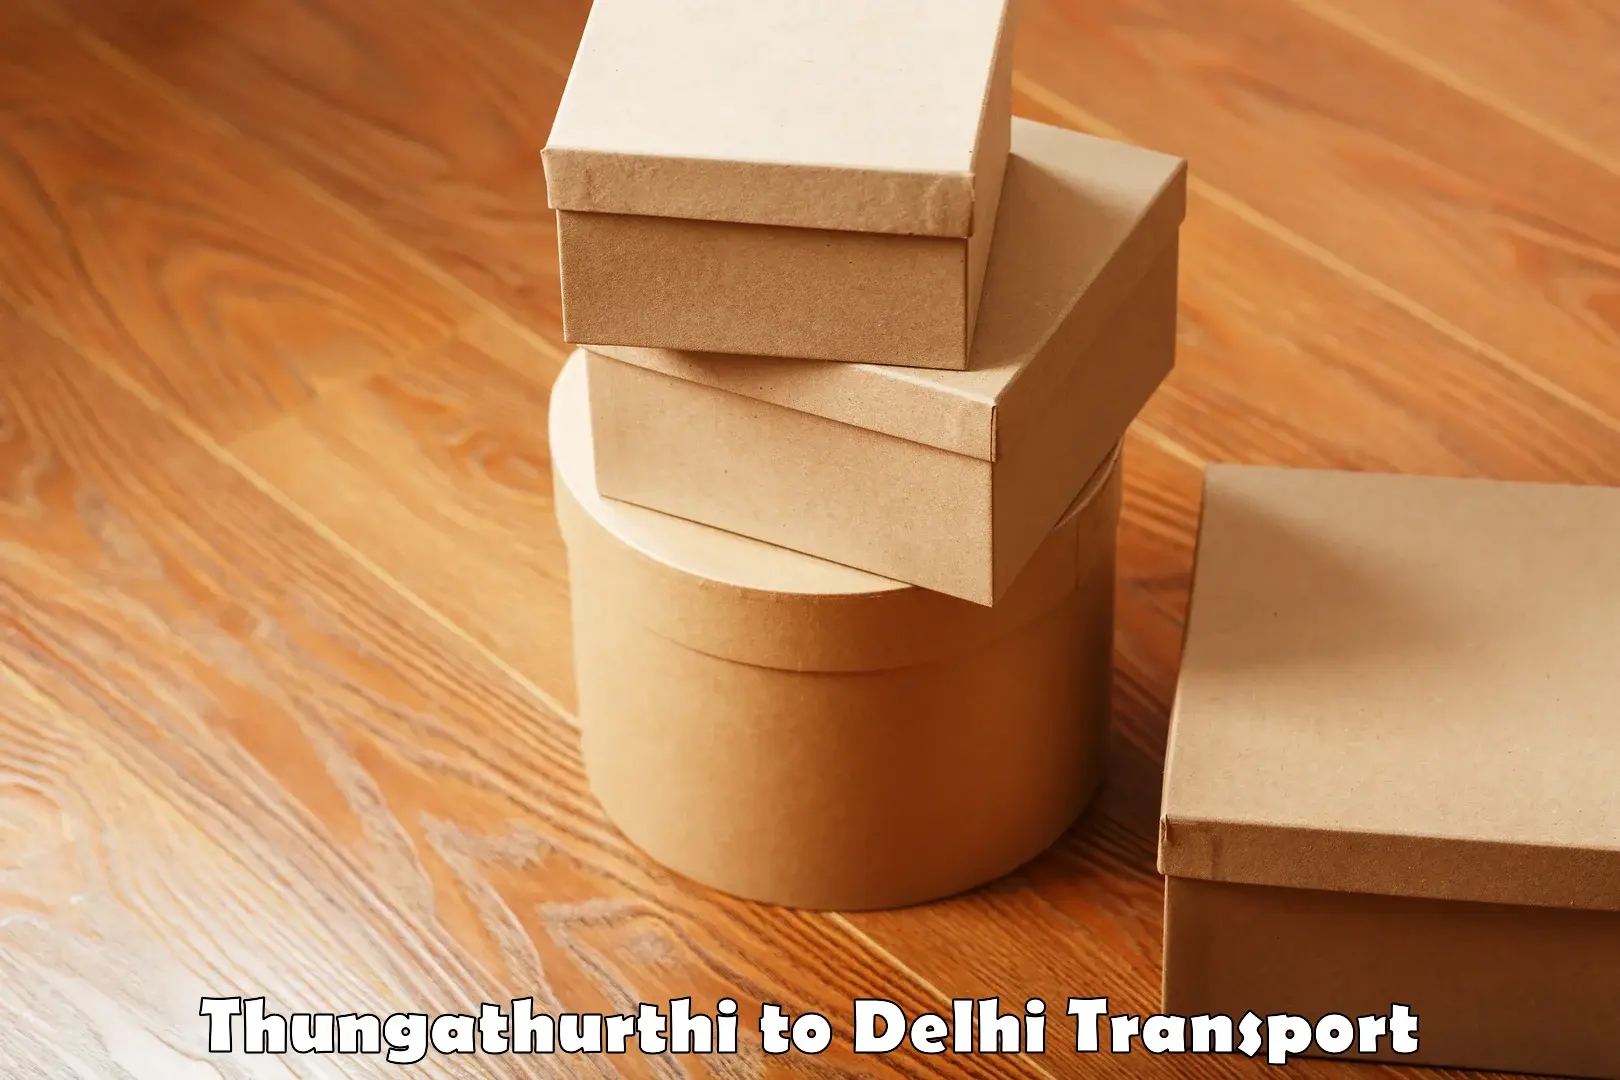 Lorry transport service Thungathurthi to University of Delhi